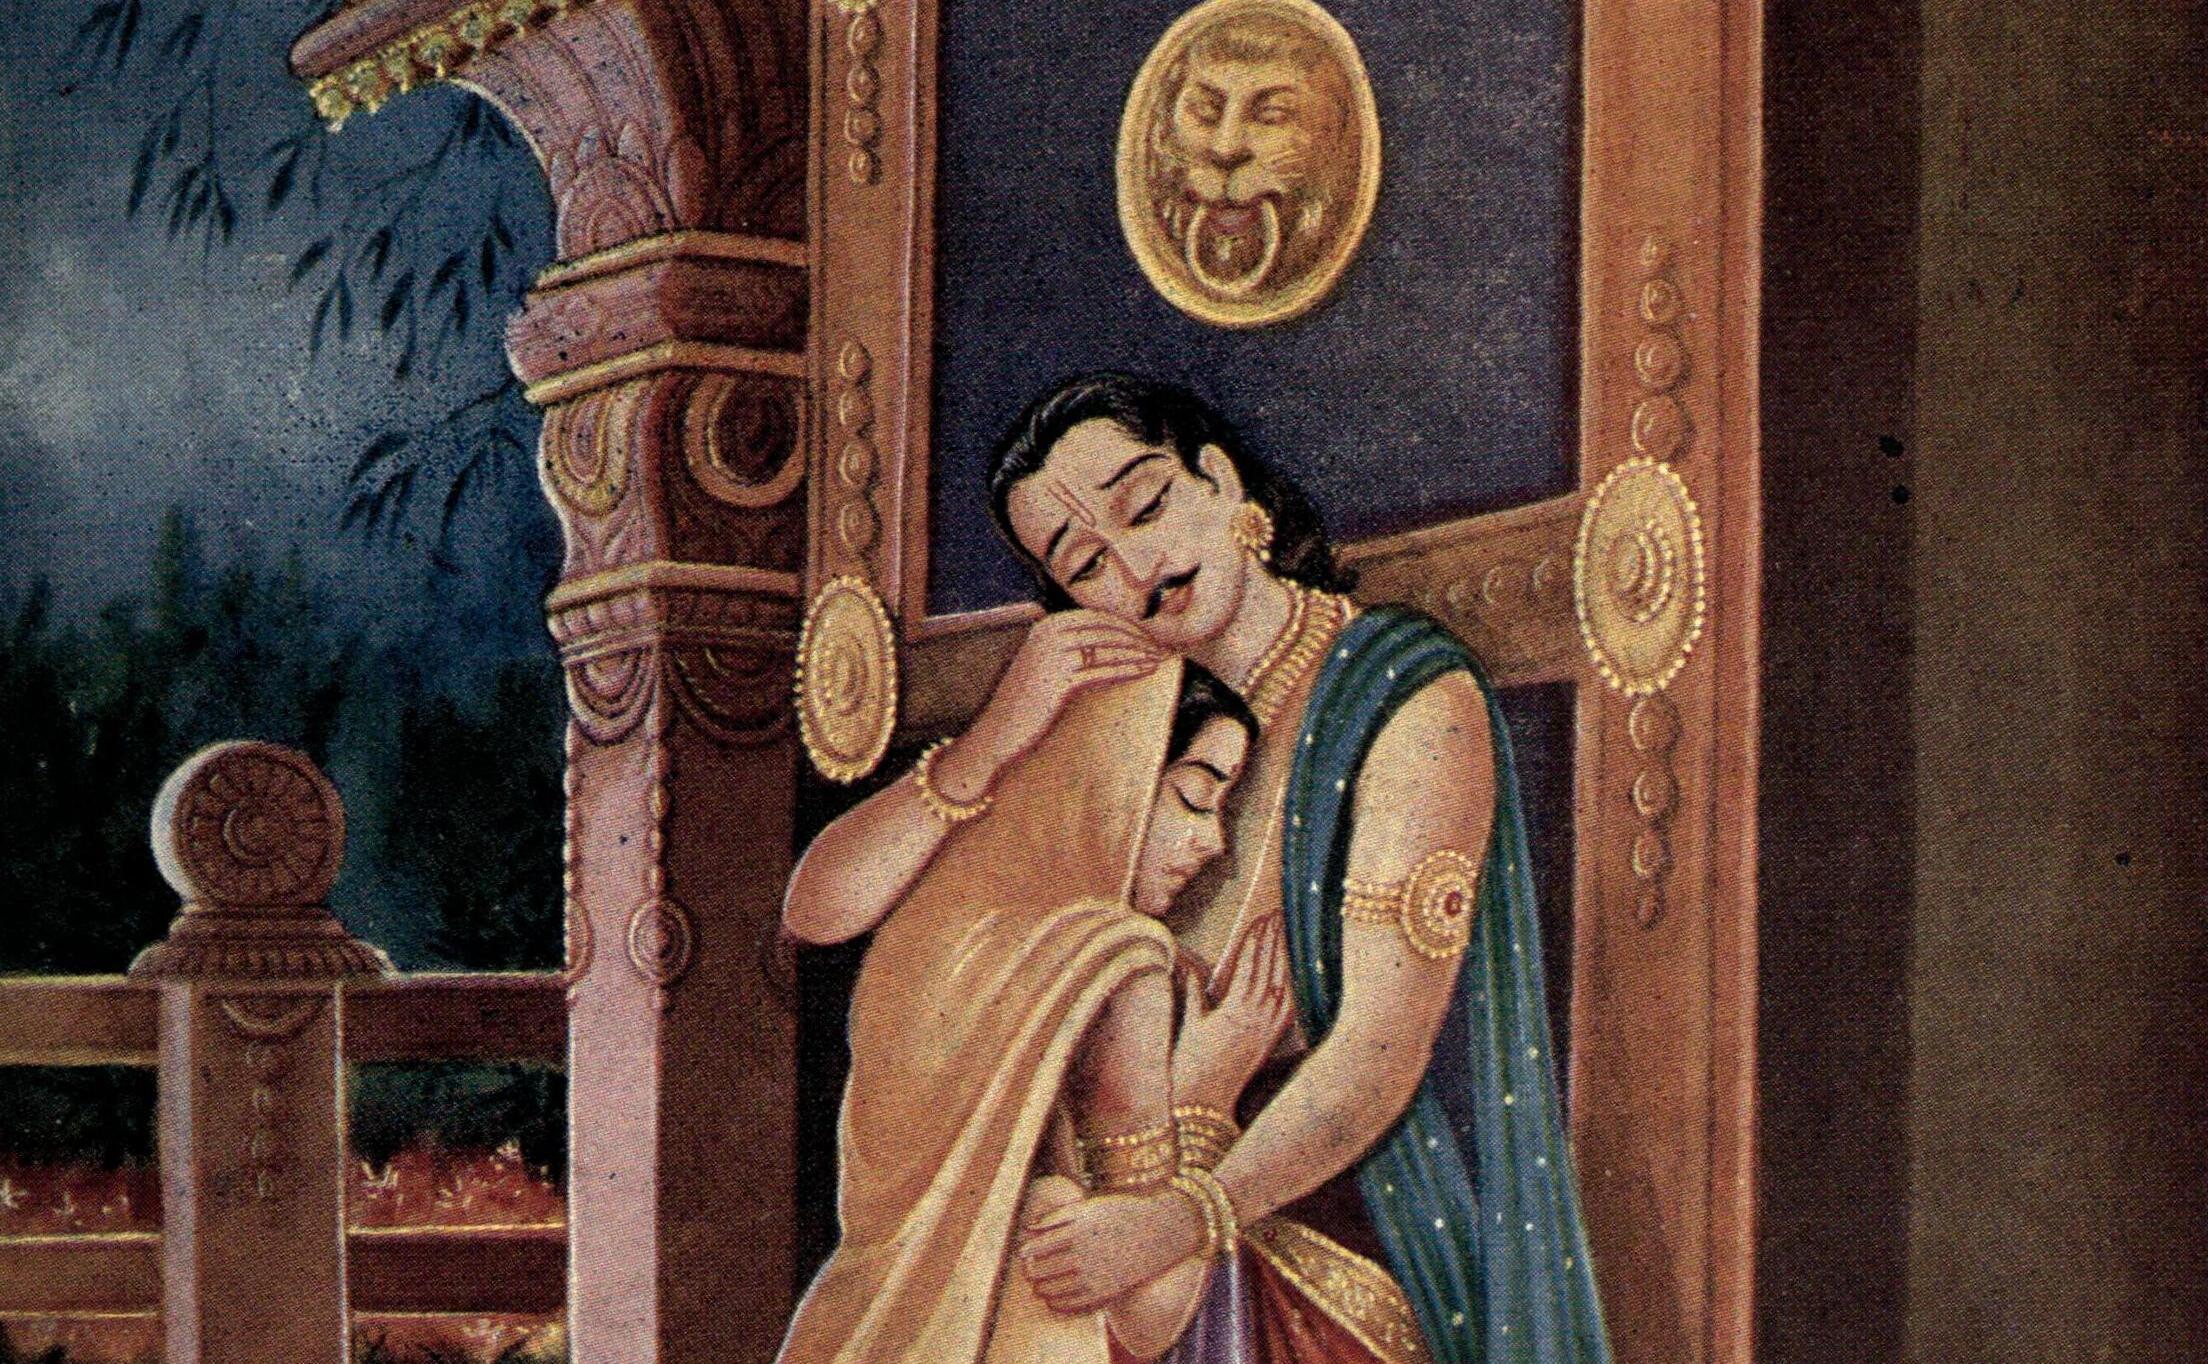 Ulupi, a widow who married Arjuna